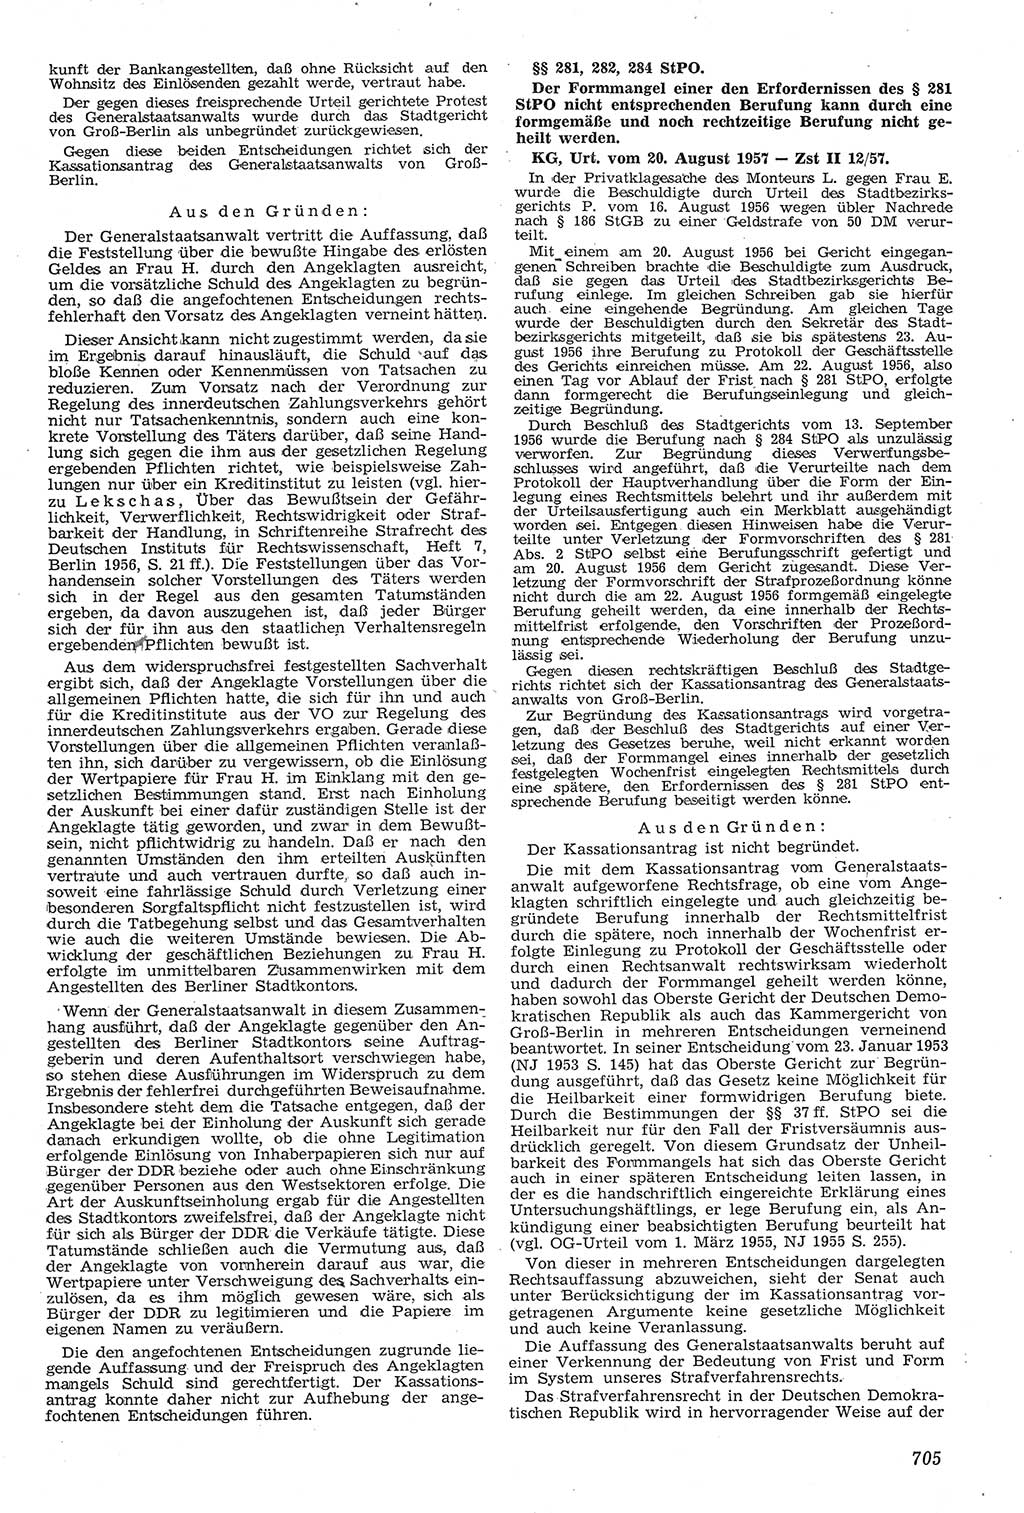 Neue Justiz (NJ), Zeitschrift für Recht und Rechtswissenschaft [Deutsche Demokratische Republik (DDR)], 11. Jahrgang 1957, Seite 705 (NJ DDR 1957, S. 705)